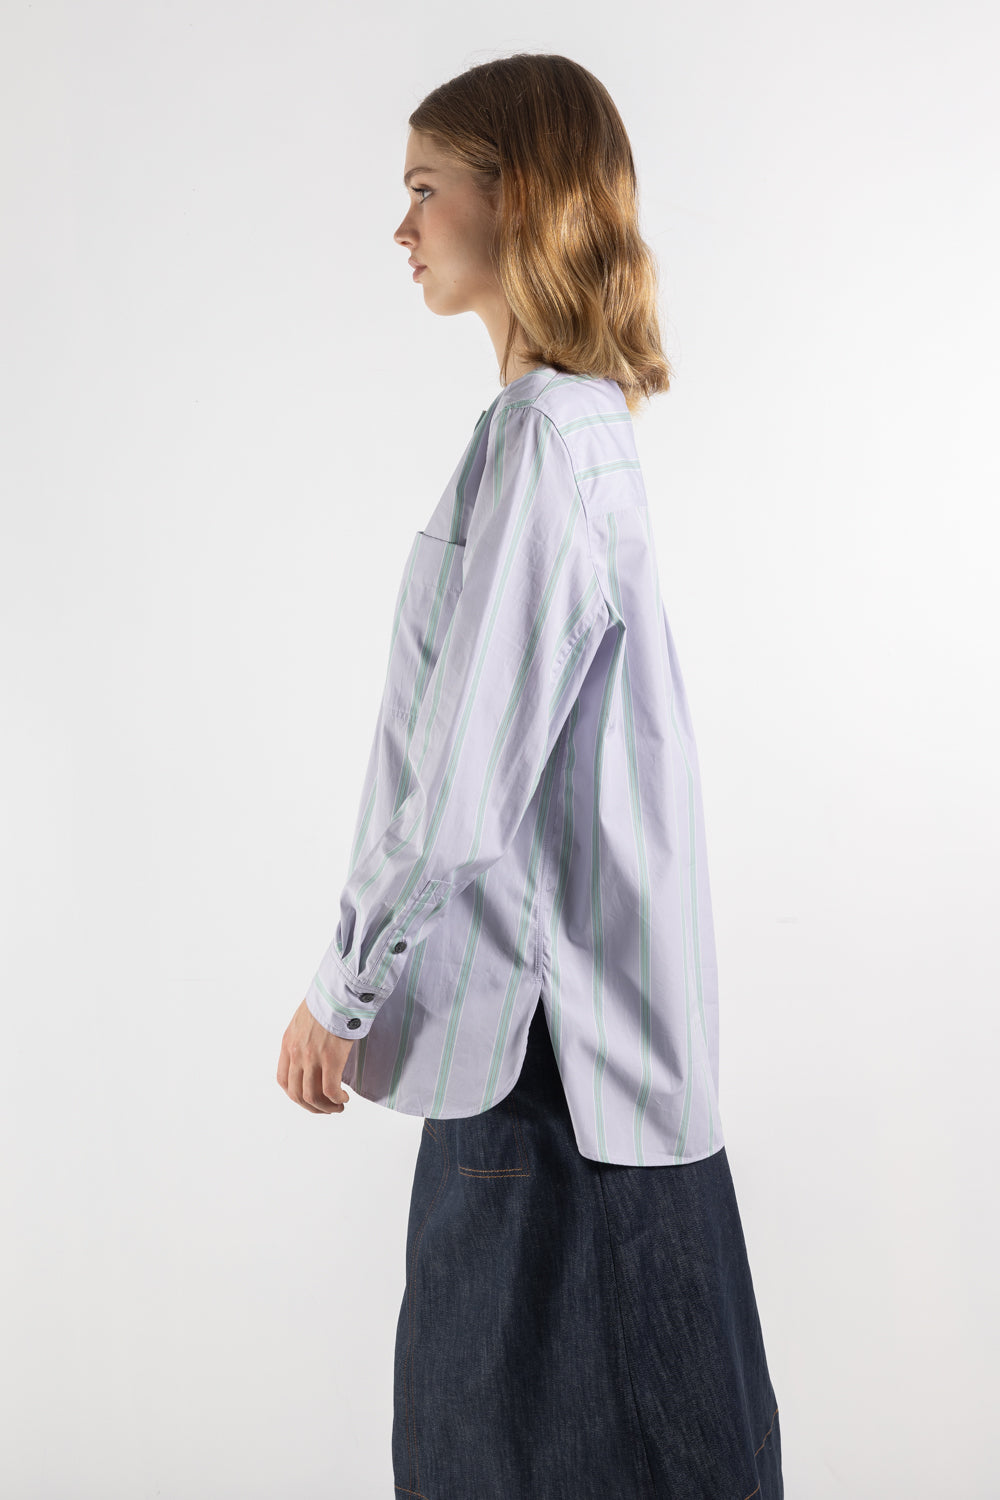 Womens Shirt | Soeur Thalie Shirt | The Standard Store